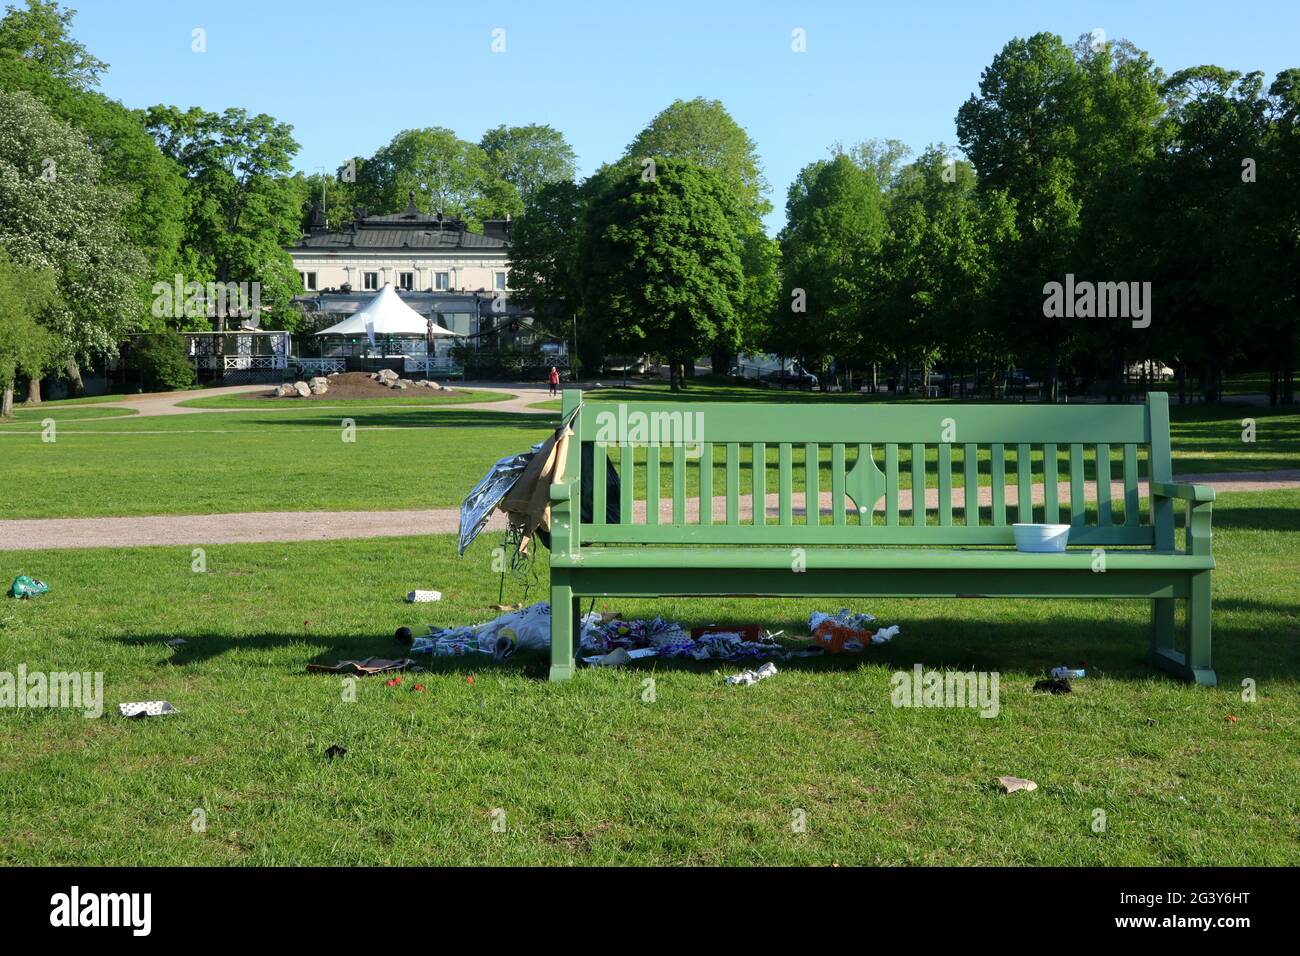 Abfall, Plastiktüten und Chaos, die von einer Parkbank und auf dem Gras hinterlassen wurden. Kaivopuisto Park, Helsinki, Finnland. 6. Juni 2021. Stockfoto